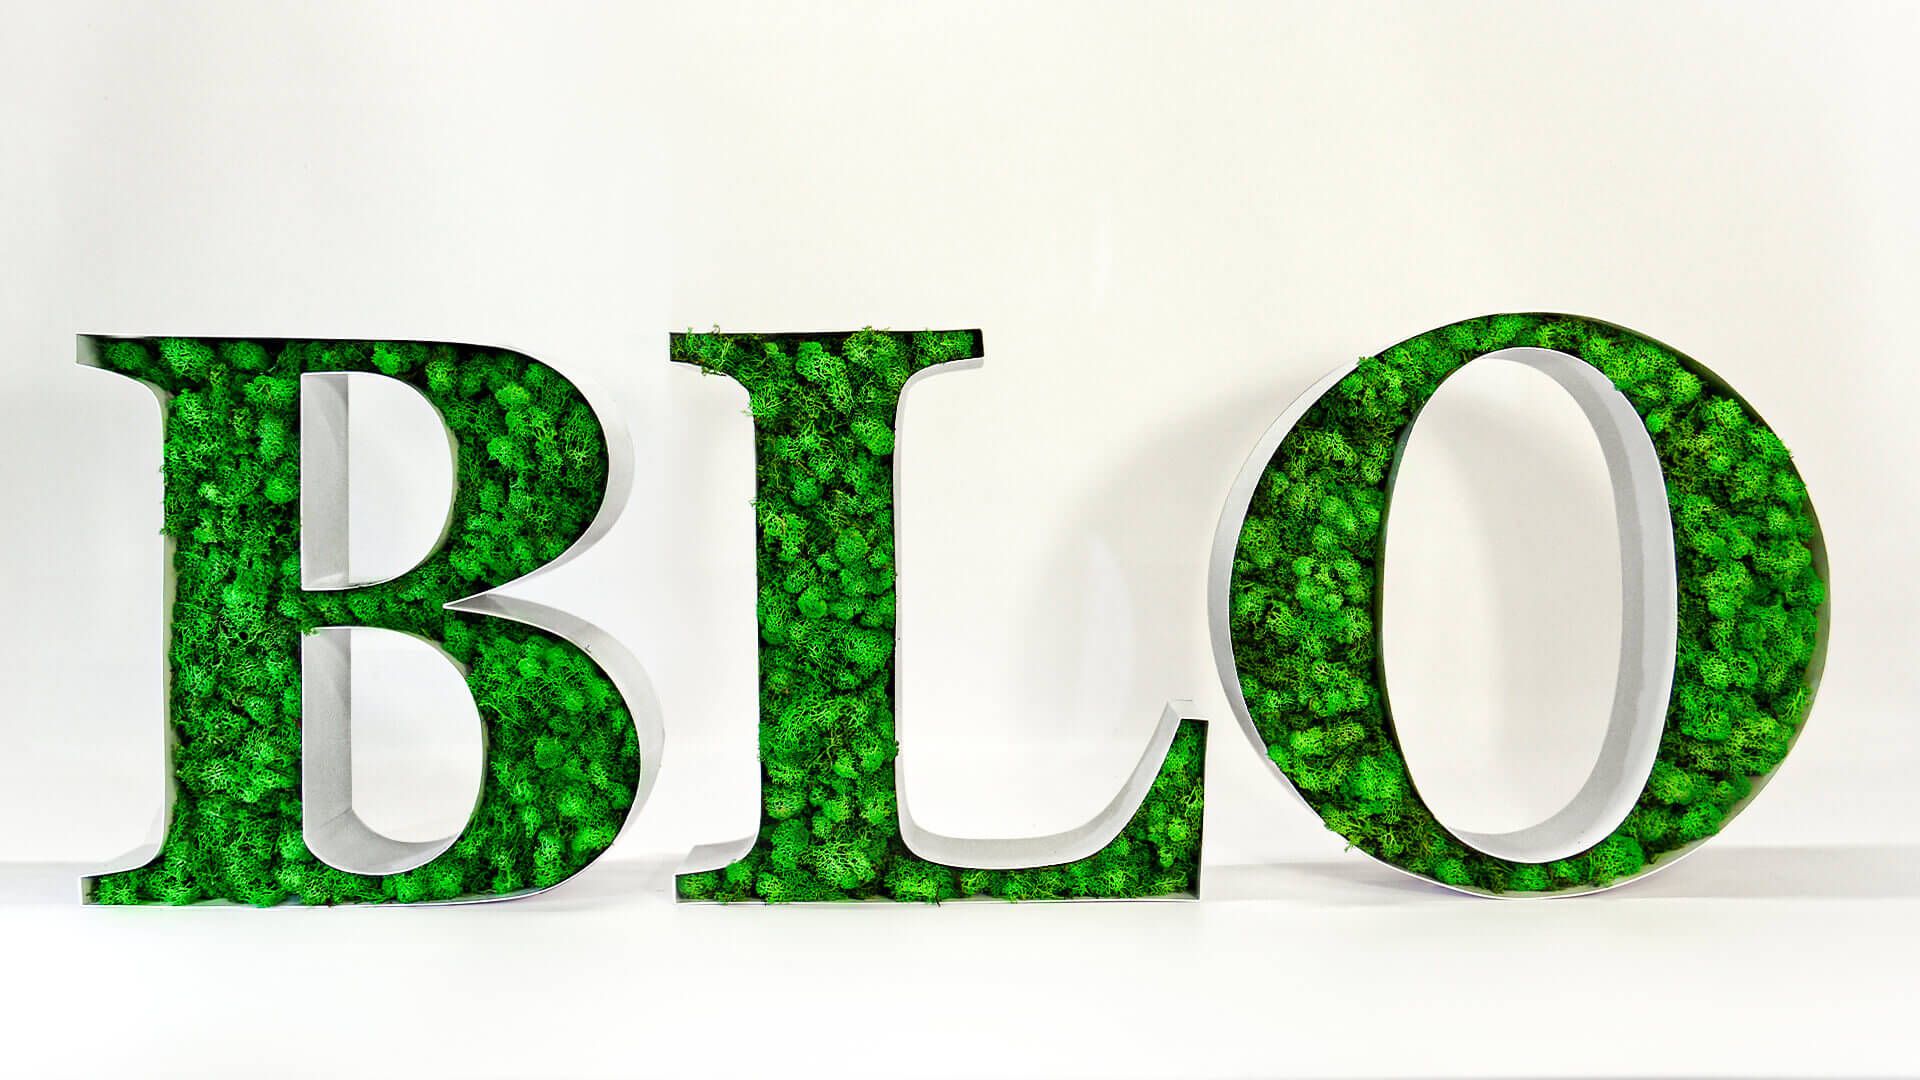 Lettere decorative BLO - Lettere decorative BLO, riempite di muschio.